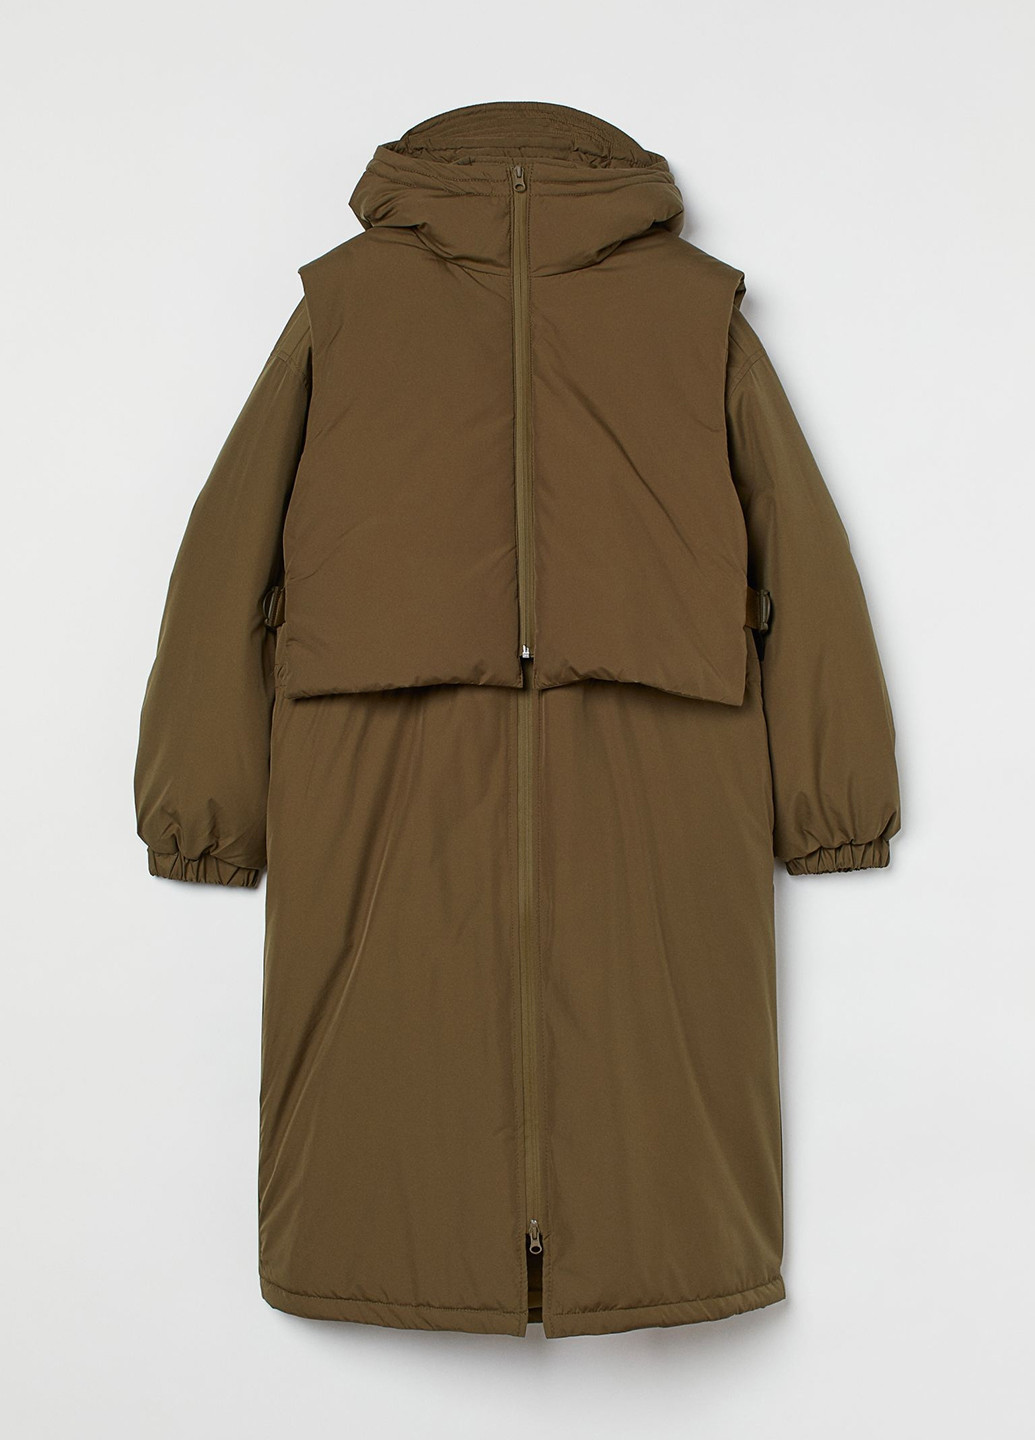 Оливковый (хаки) демисезонный комплект (куртка, жилет) H&M